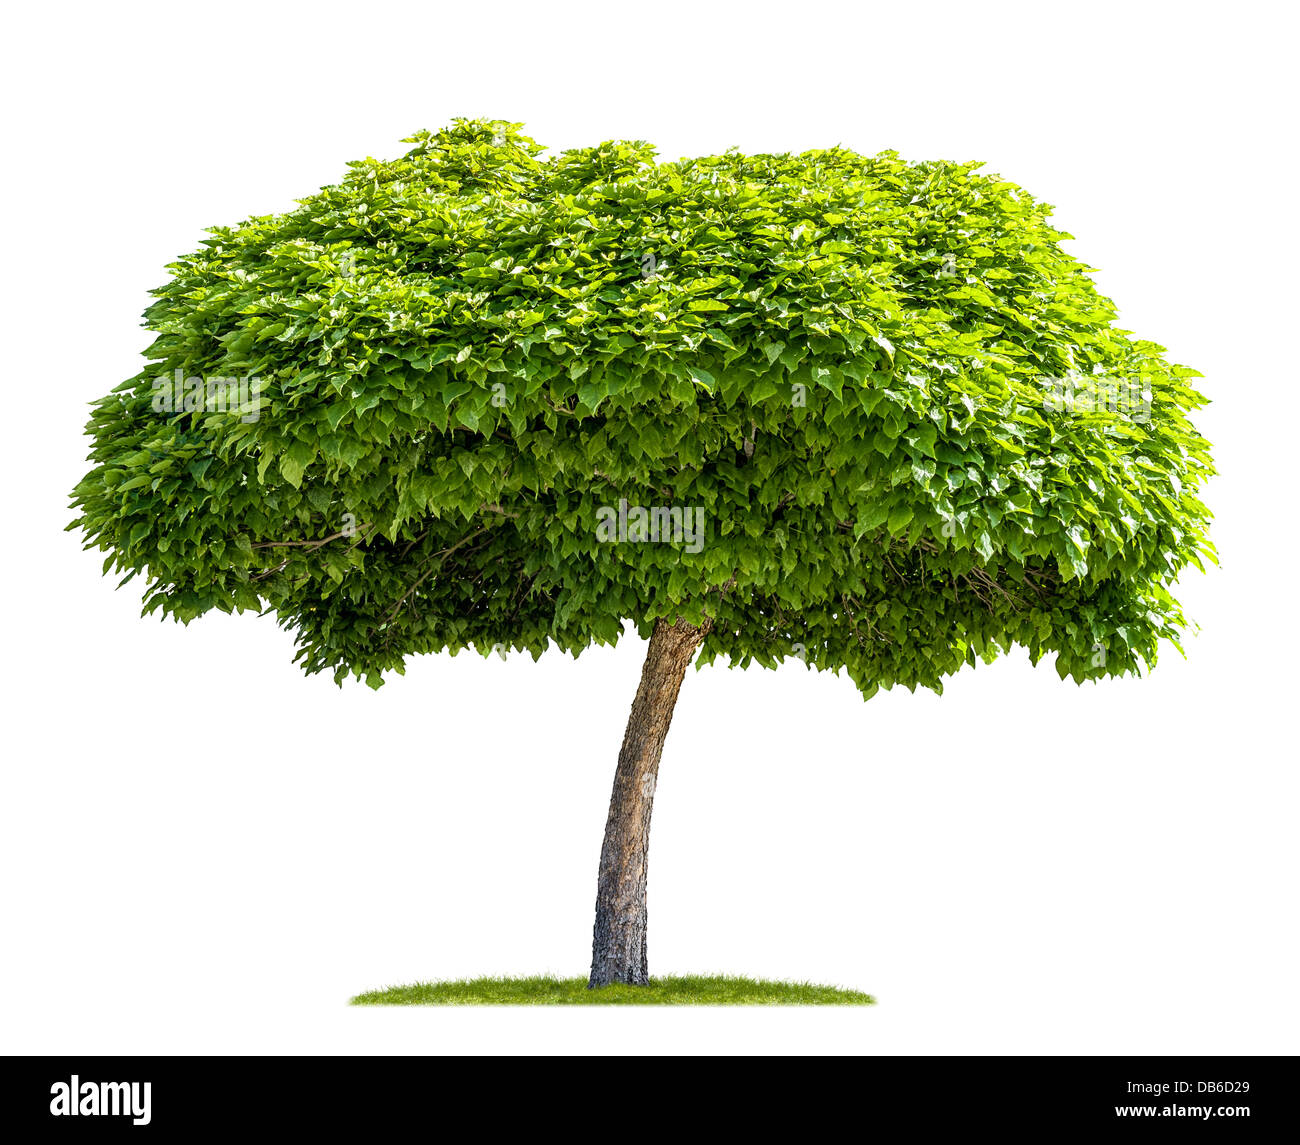 isolierte Catalpa-Baum auf einem weißen Hintergrund Stockfoto